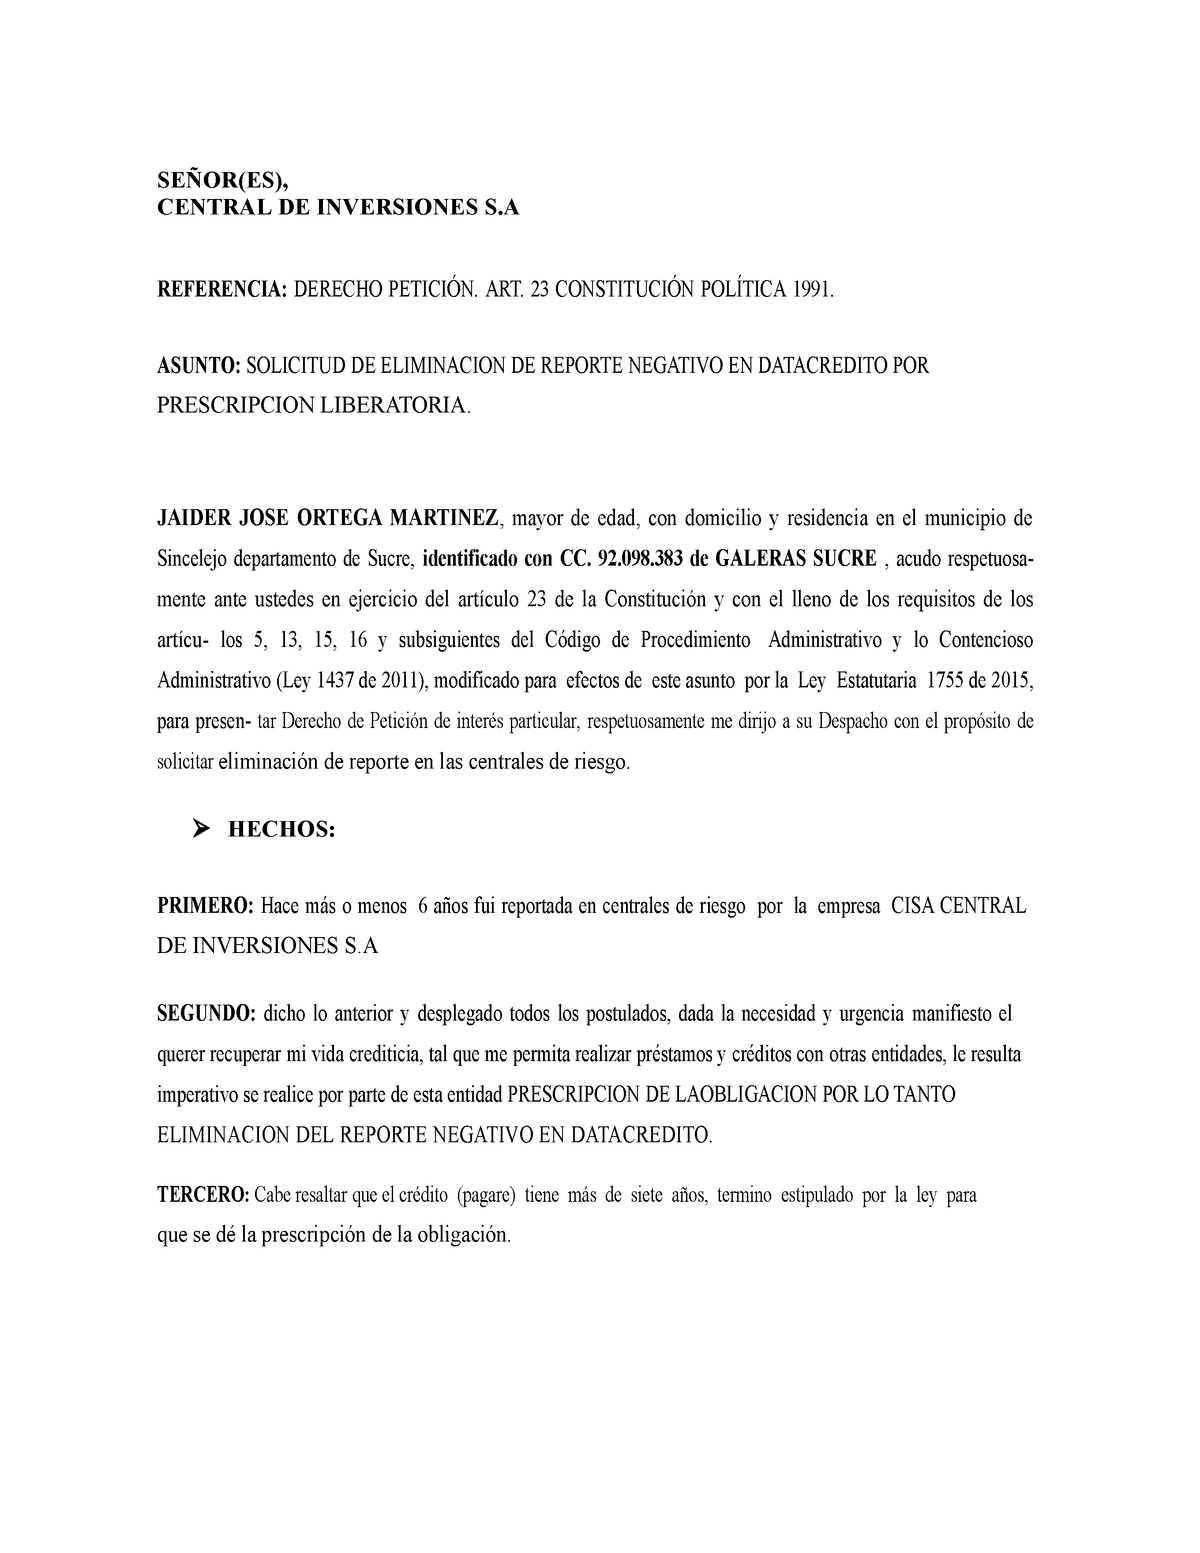 Modelo de datacredito - copia - SEÑOR(ES), CENTRAL DE INVERSIONES S ...